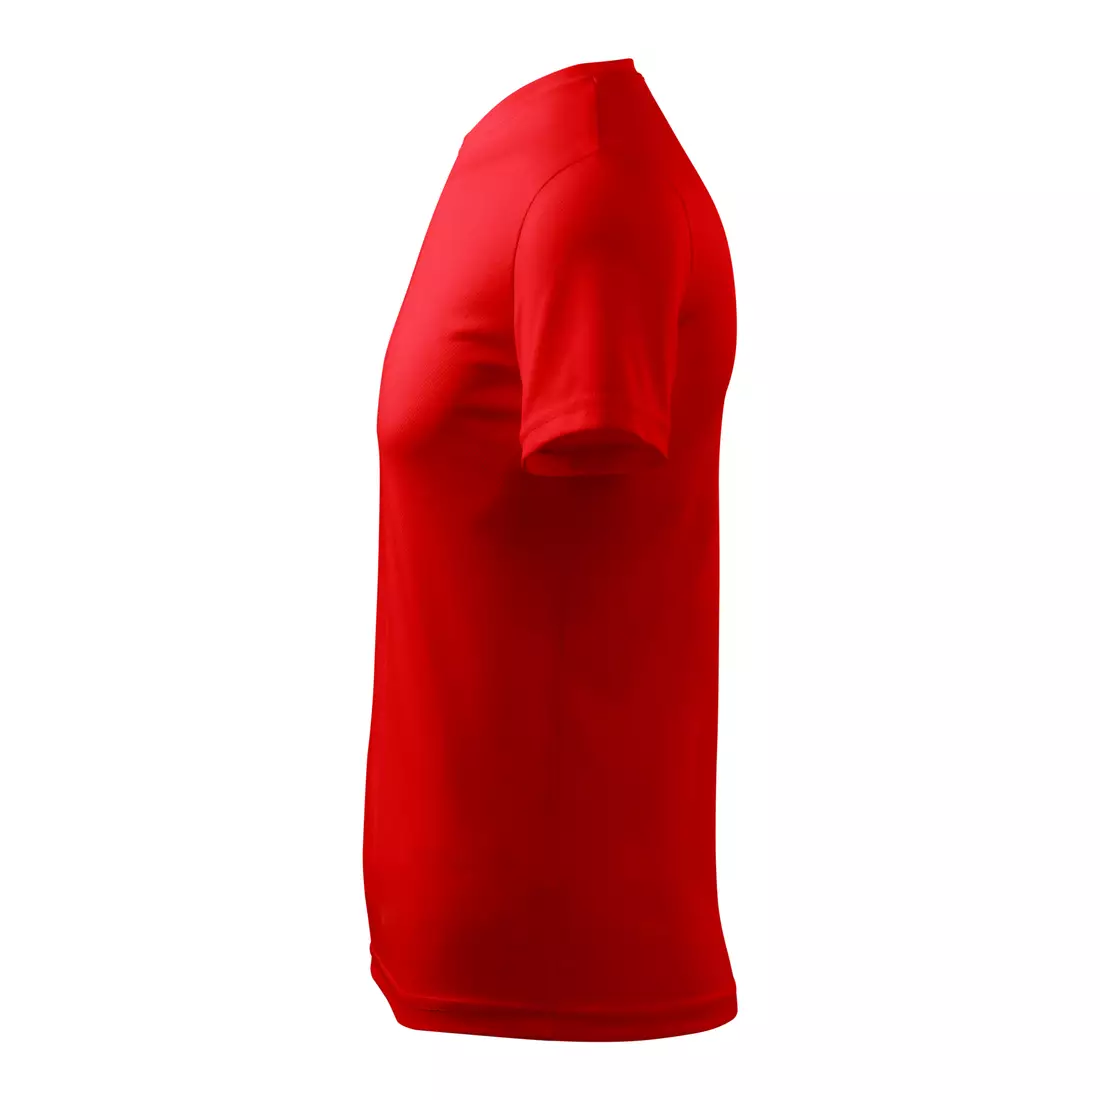 MALFINI FANTASY - męska koszulka sportowa 100% poliester, czerwony 1240713-124